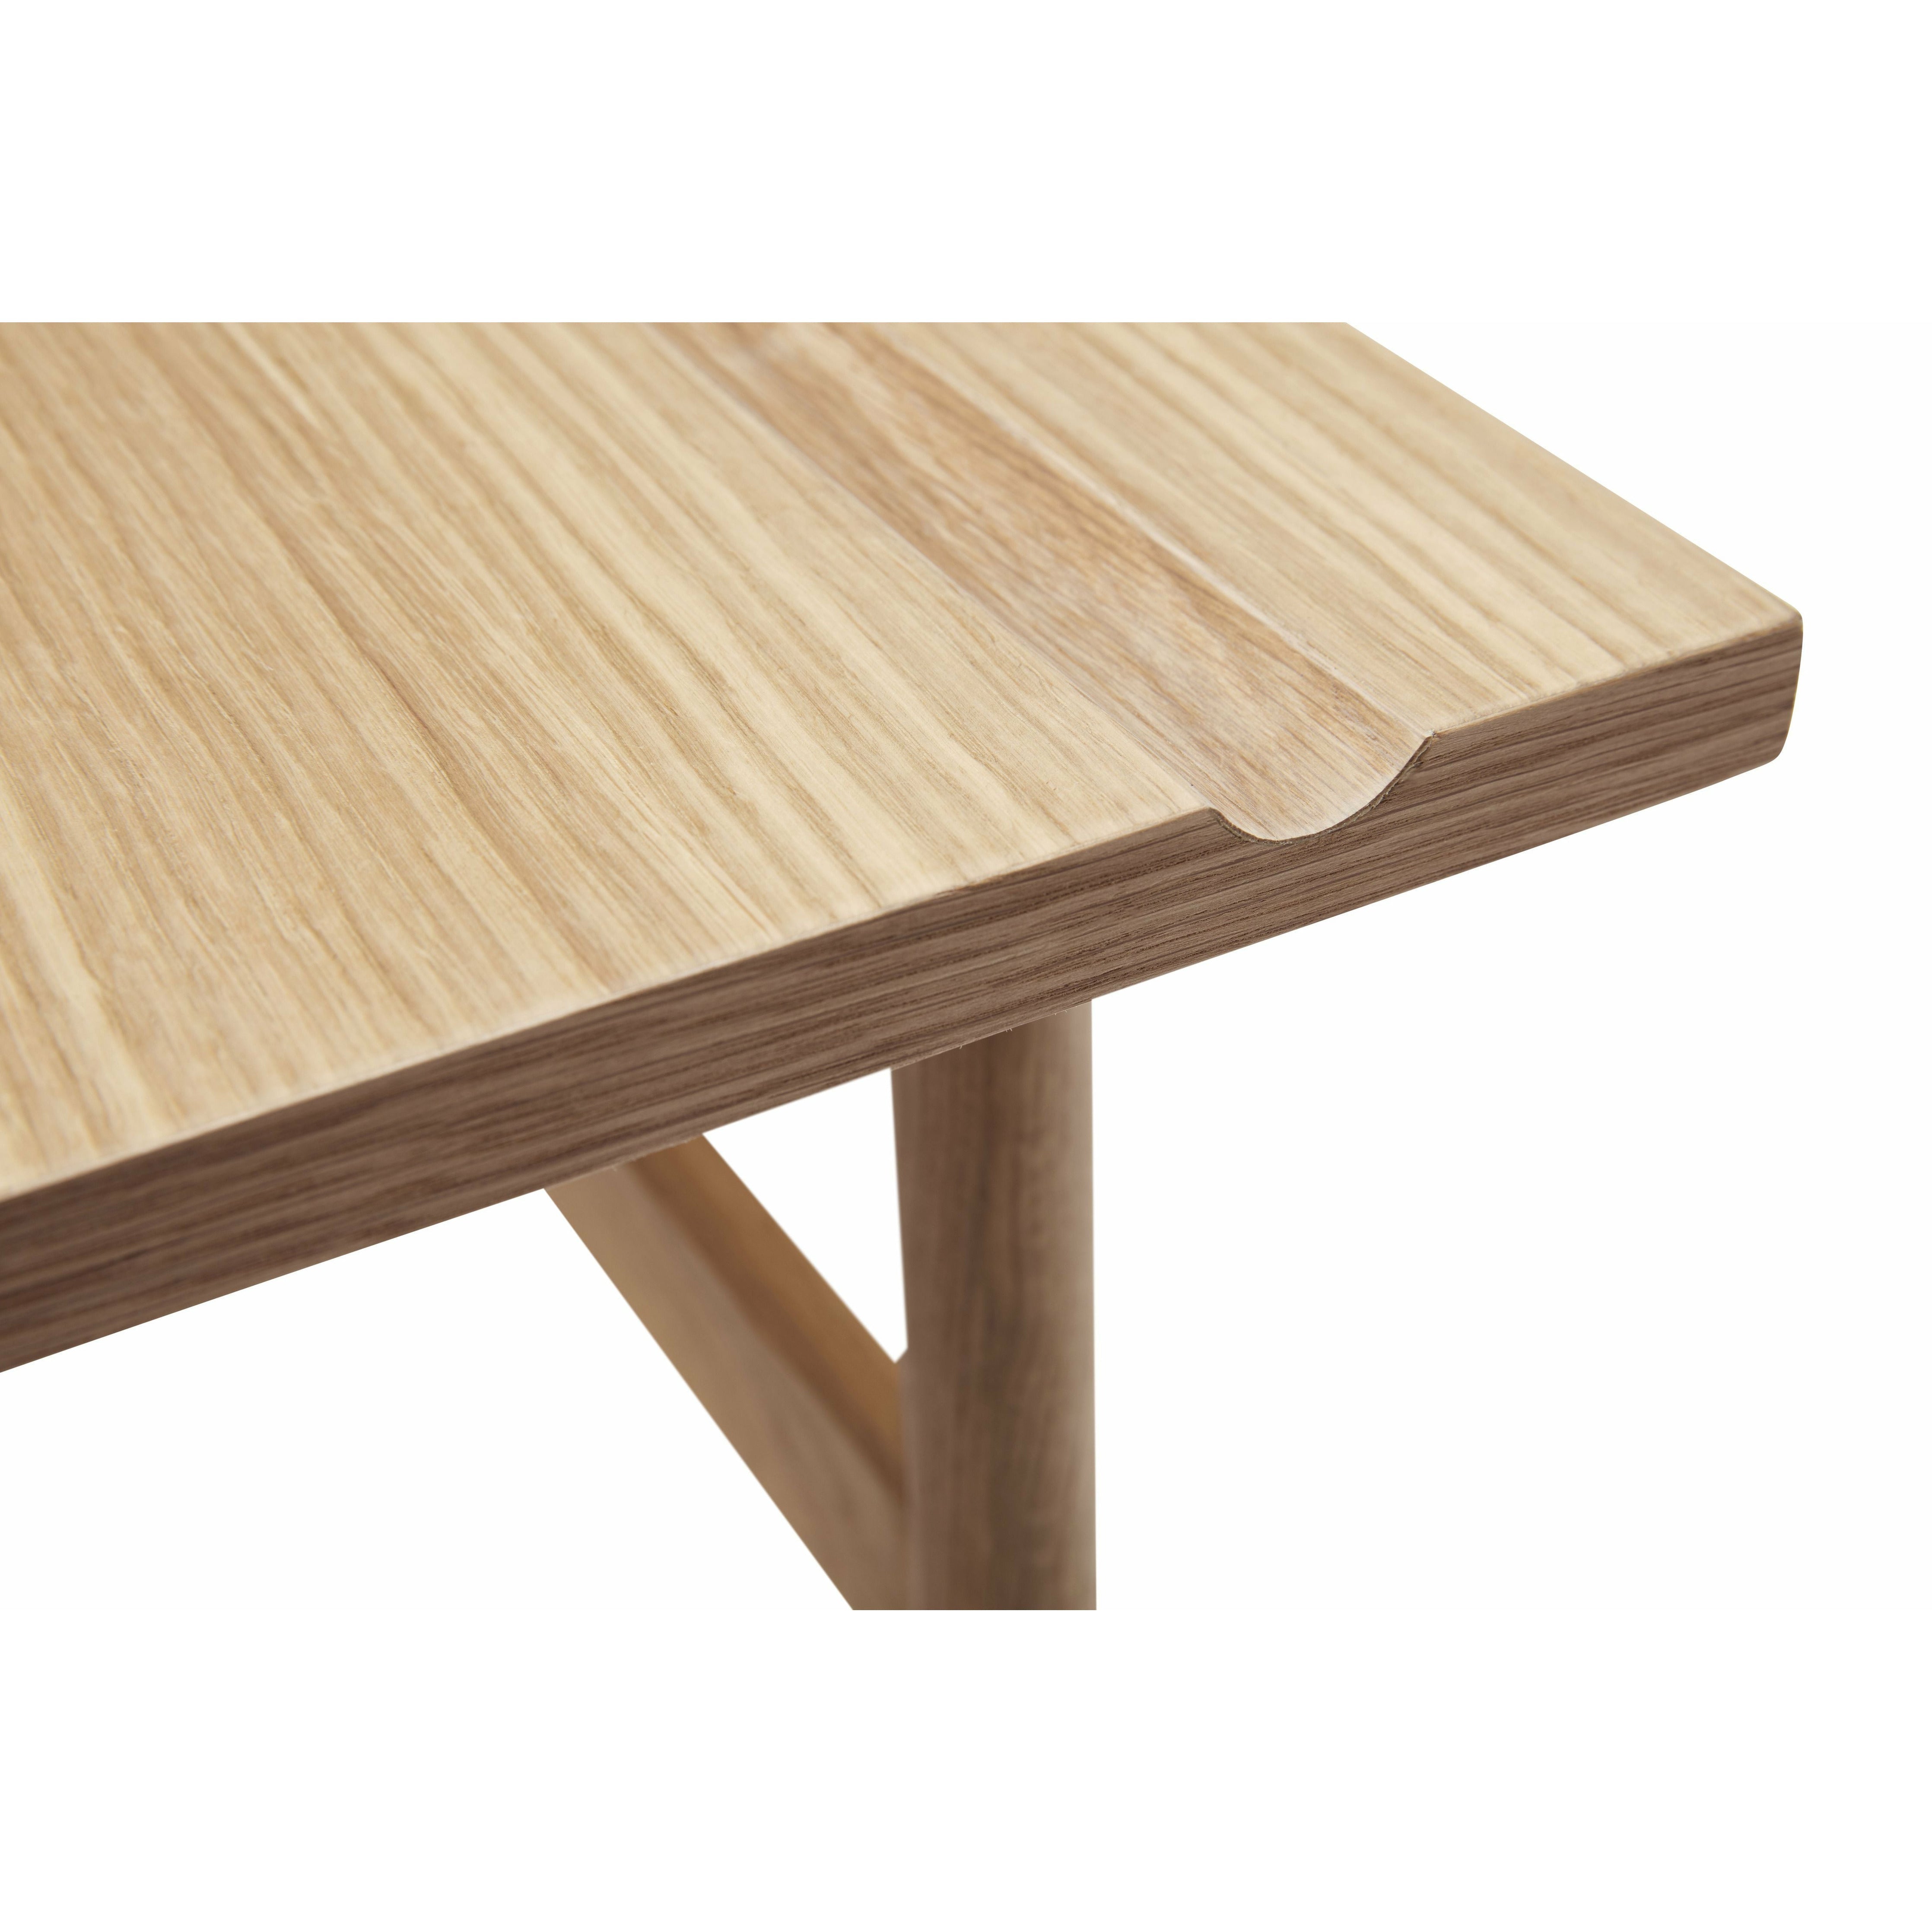 Hübsch Folk Desk Oak Fsc Natural, 120x60x77 Cm